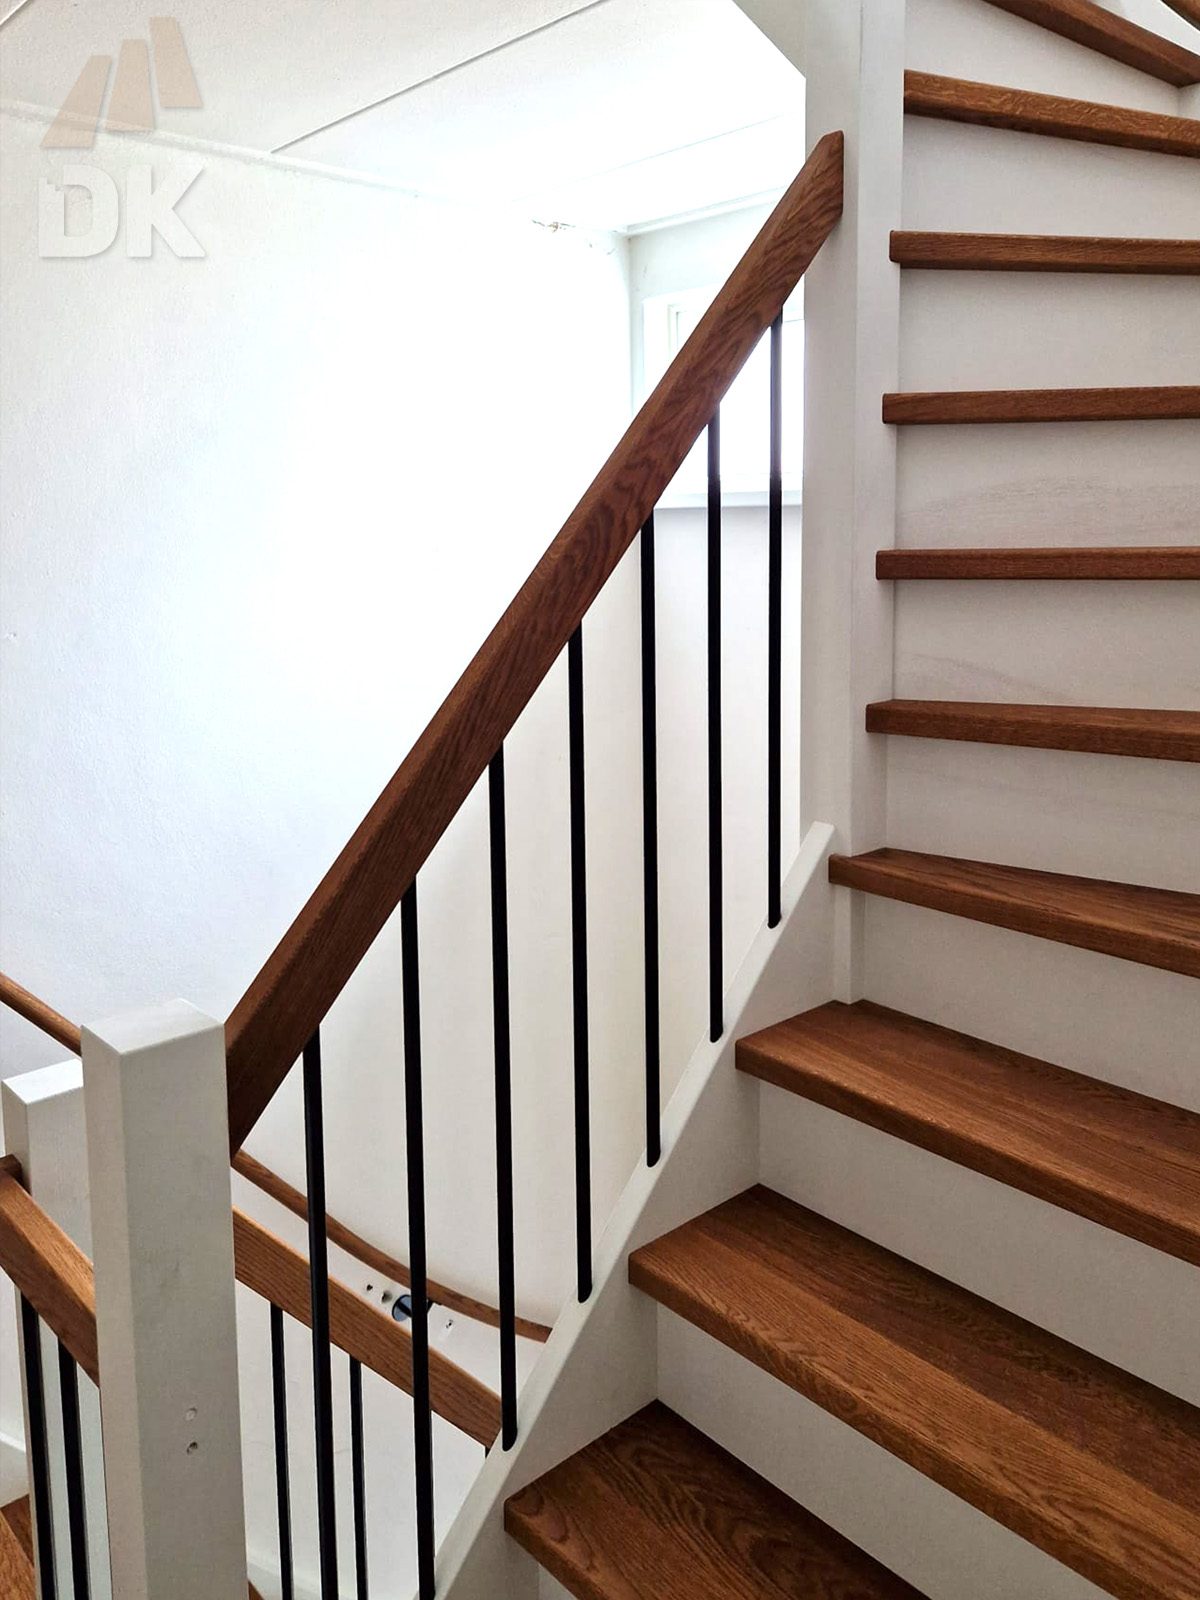 2 Stalen trappen vervangen door kwarttrappen - Foto 3